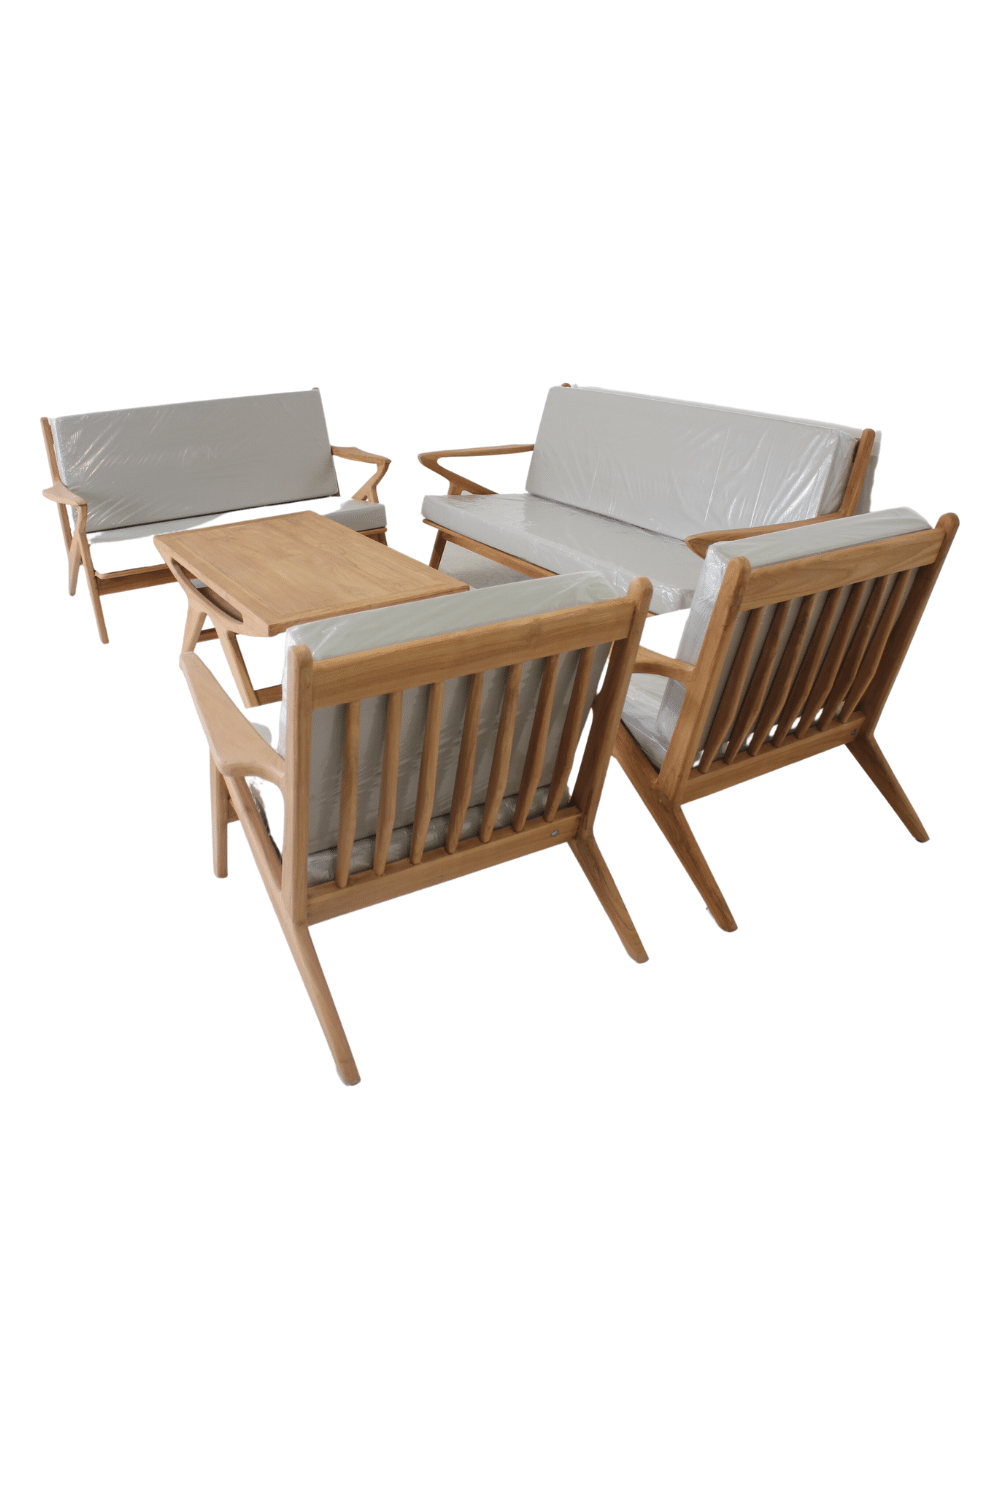 Teak houten tuinset inclusief kussens. 1 3 zit lounge bank, 2 zit lounge bank, 2 fauteuils en salontafel